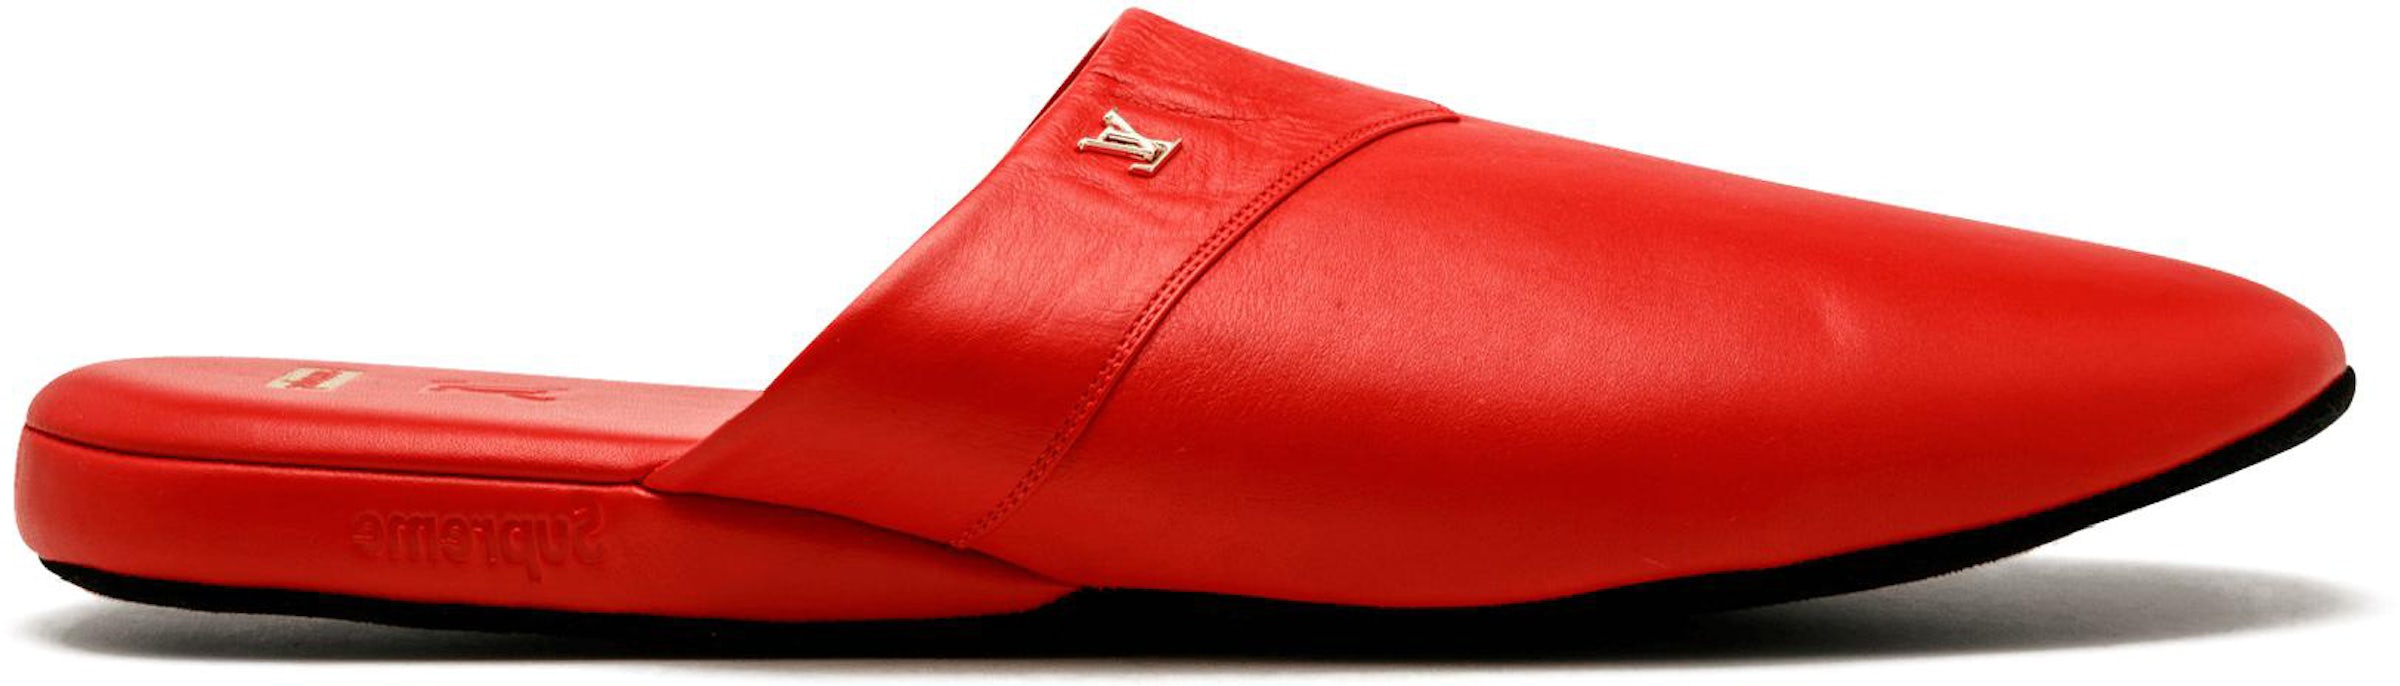 Louis Vuitton x Supreme LV Monogram Leather Slides - Black Sandals, Shoes -  LOUSU20571